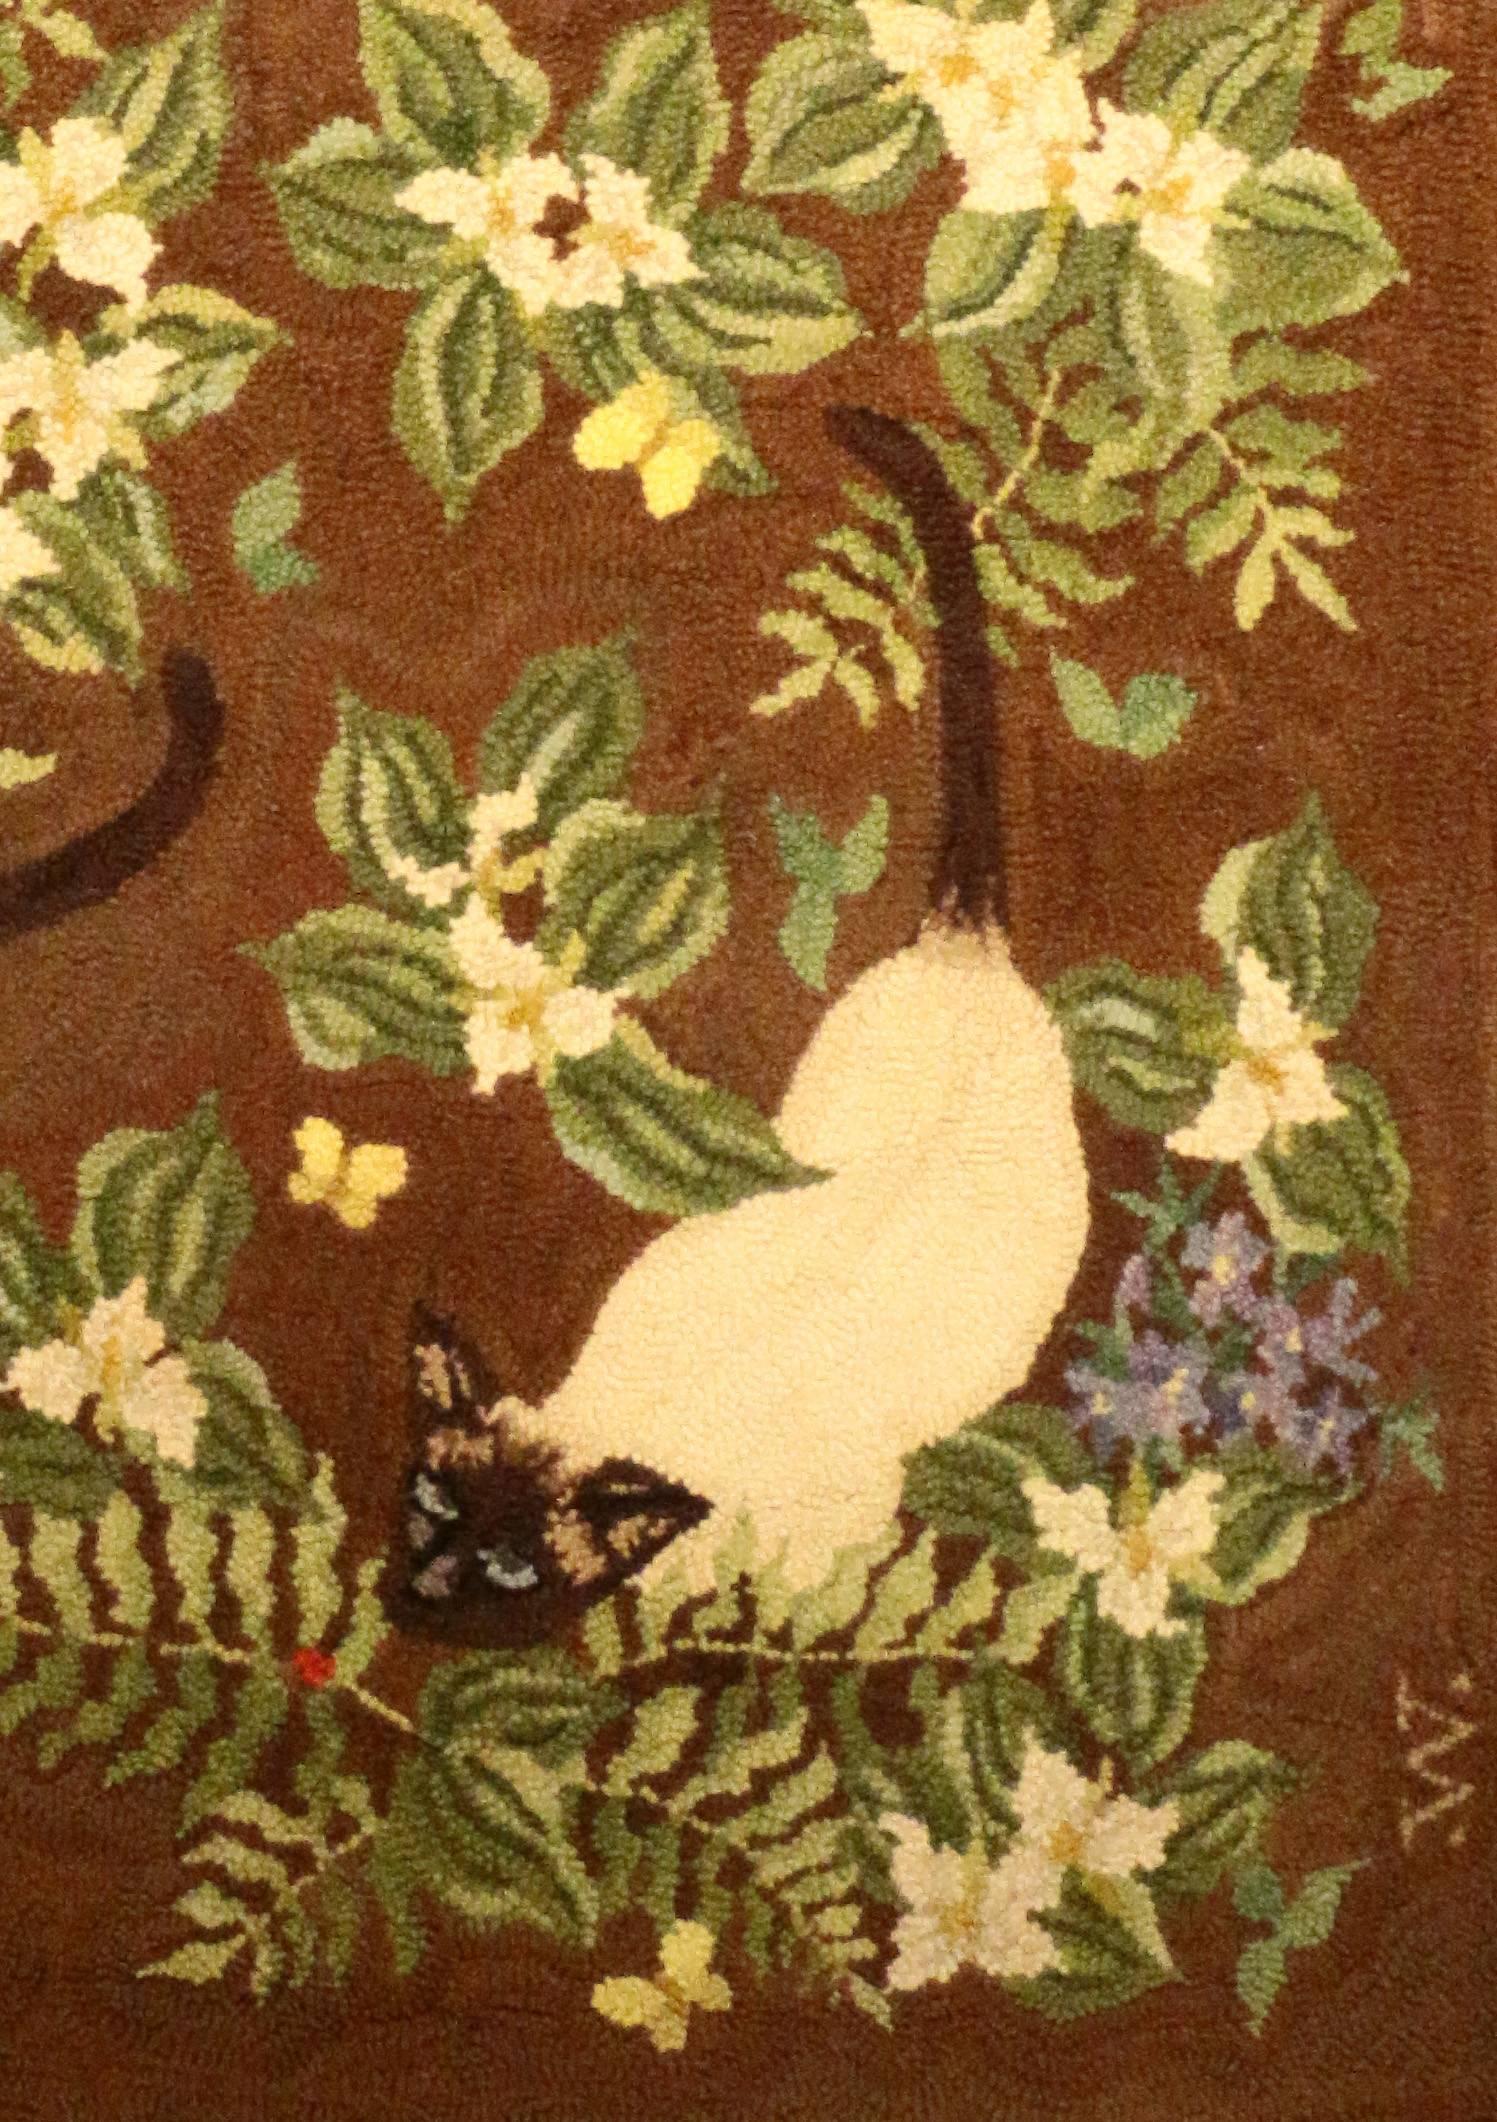 Ein Knüpfteppich der George Wells Ruggery aus Long Island, New York, der drei siamesische Katzen inmitten von Farnen und Blumen zeigt. Jedes Kätzchen studiert einen Schmetterling.
The Ruggery wurde 1920 gegründet und hat sich auf die Herstellung von